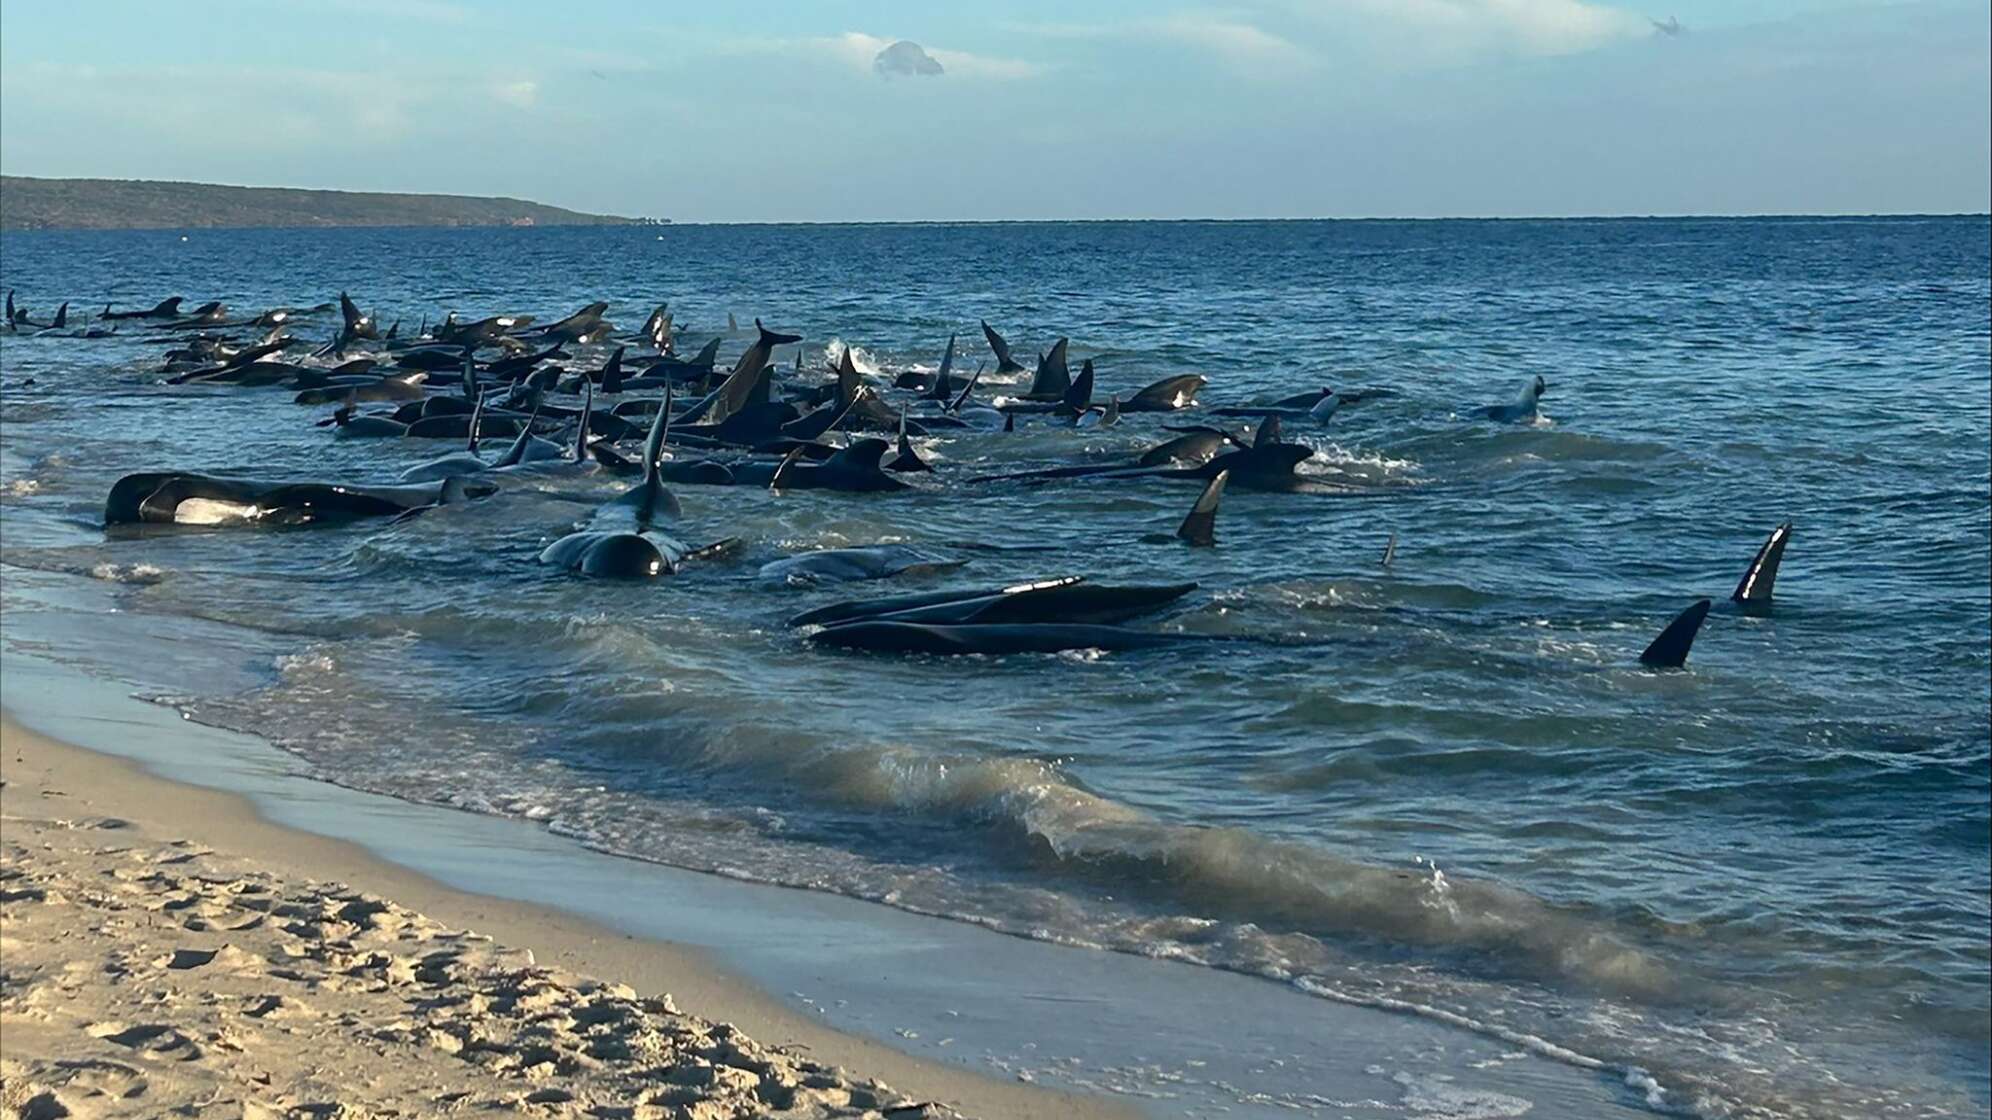 Gestrandete Wale in Australien